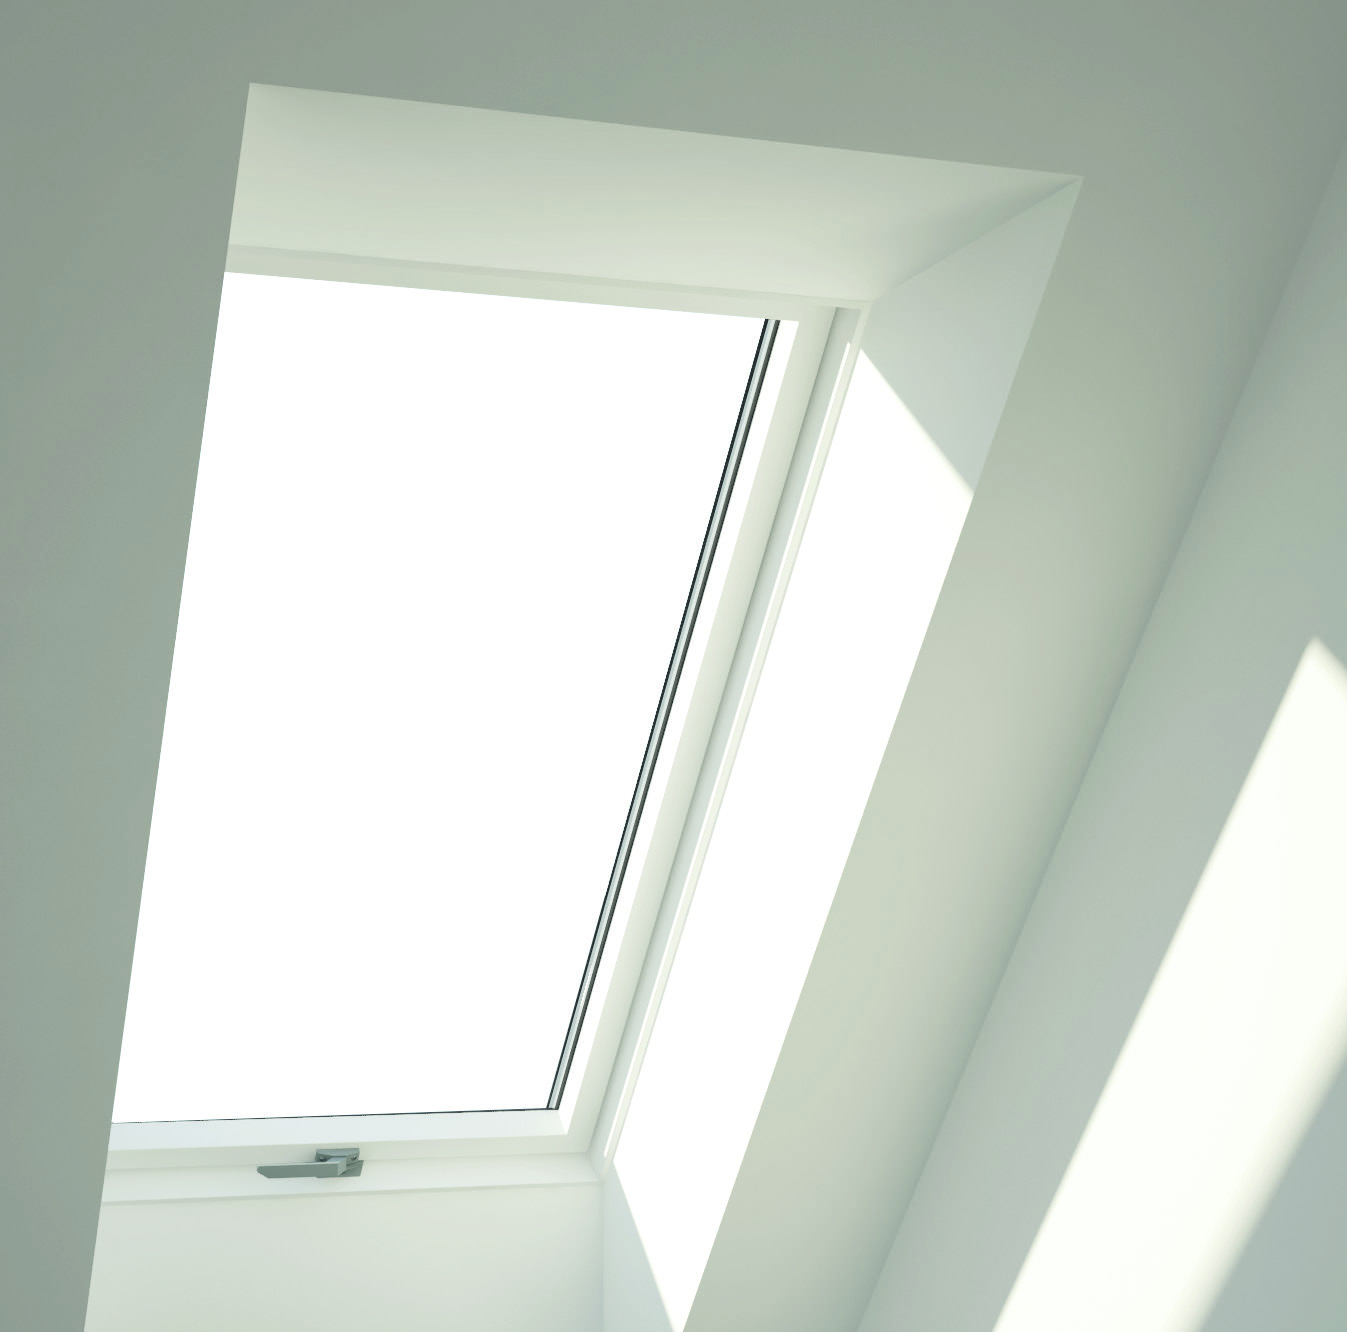 Die Qualitätswahl Kunststoffdachfenster Die beliebteste Wahl in Deutschland mit einem attraktiven Erscheinungsbild, wobei die bestmögliche Wärmeleistung und beste Haltbarkeit garantiert wird.